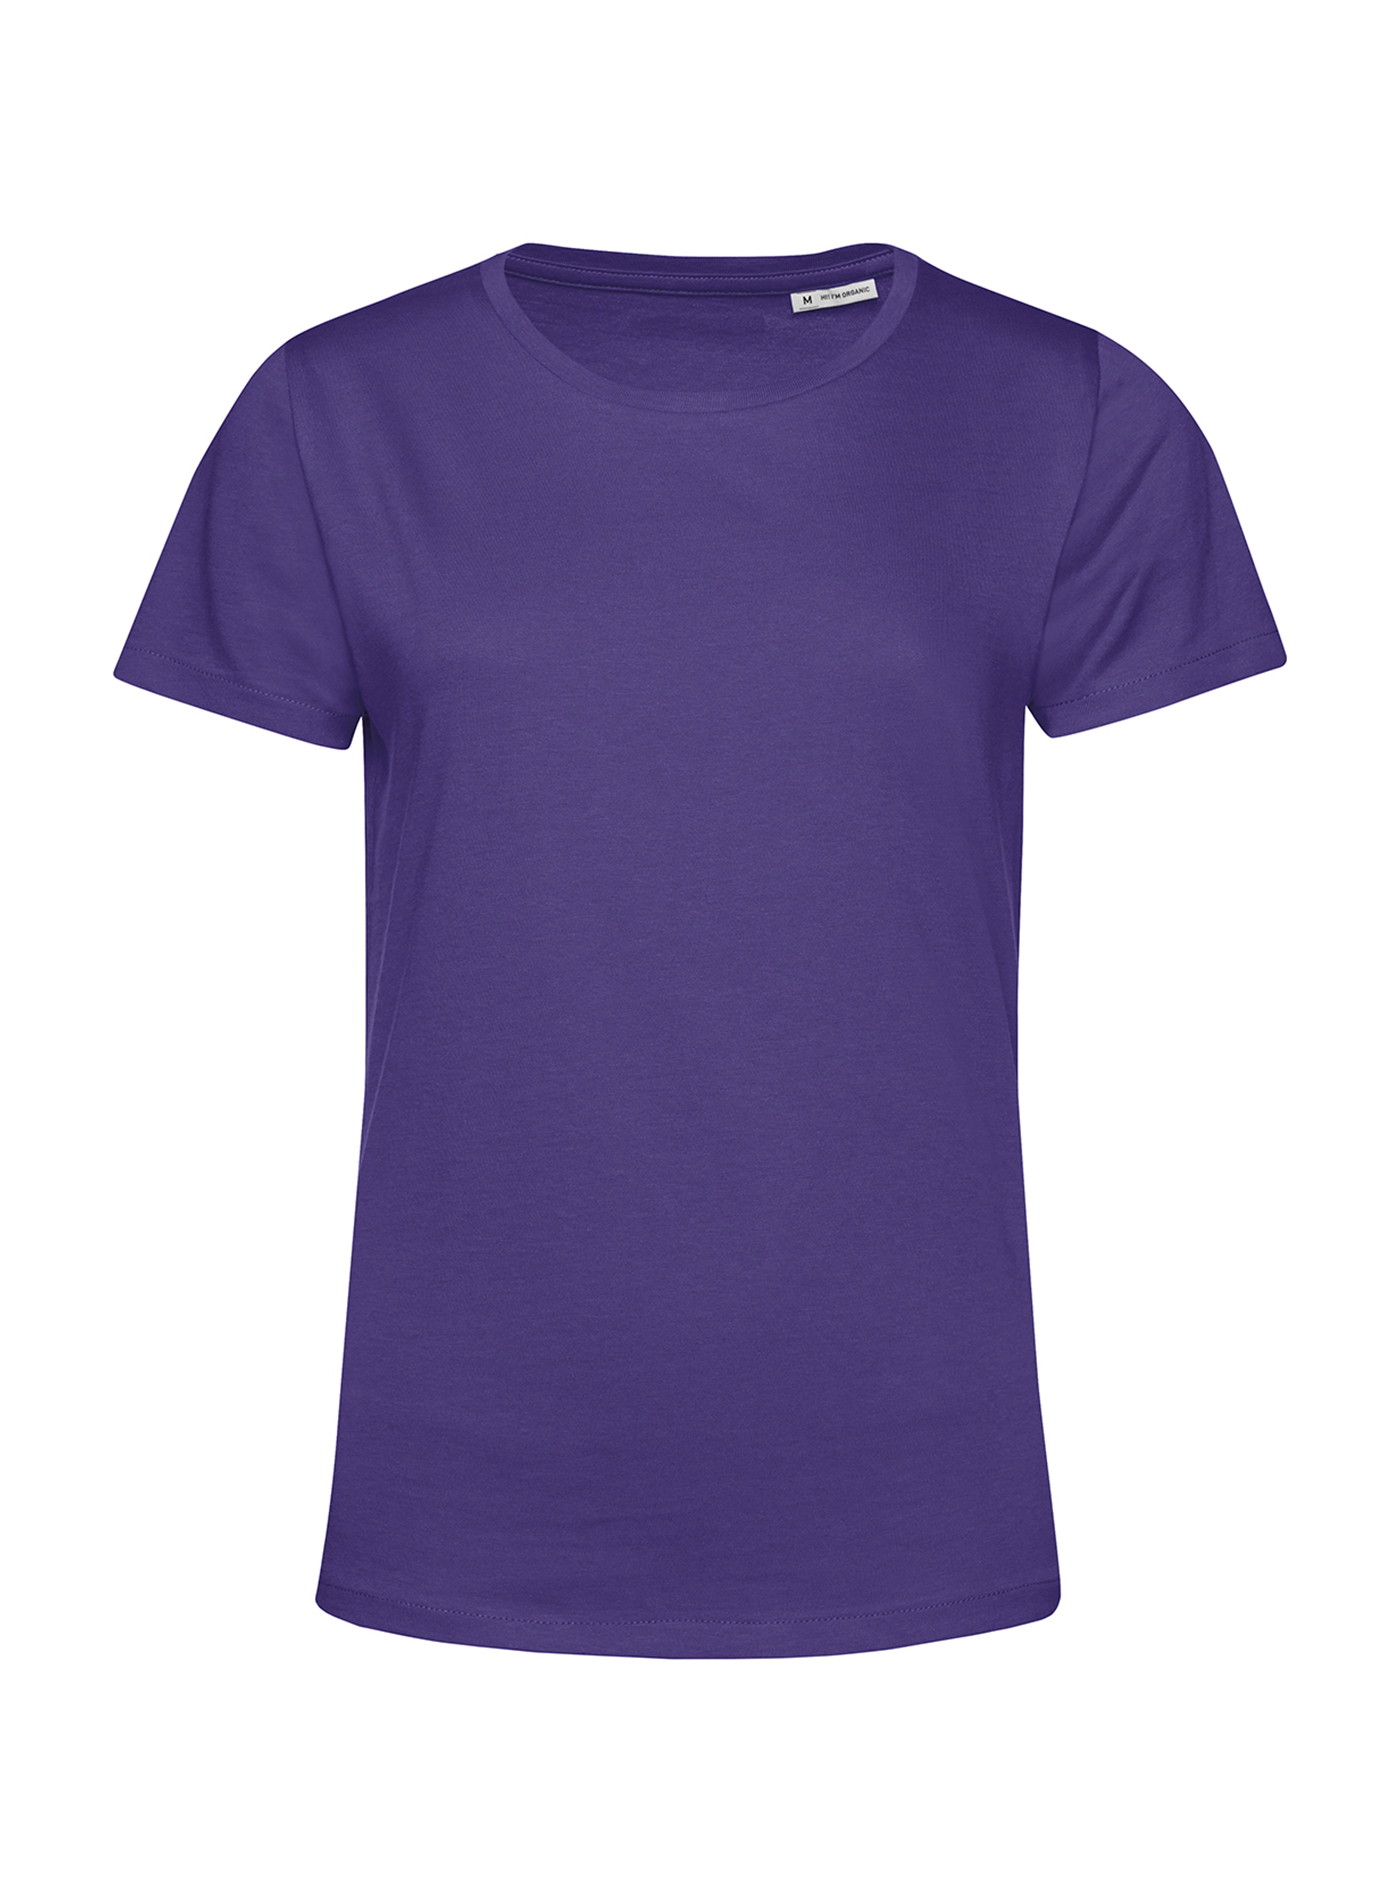 Dámské tričko B&C Collection Organic - Tmavě fialová M